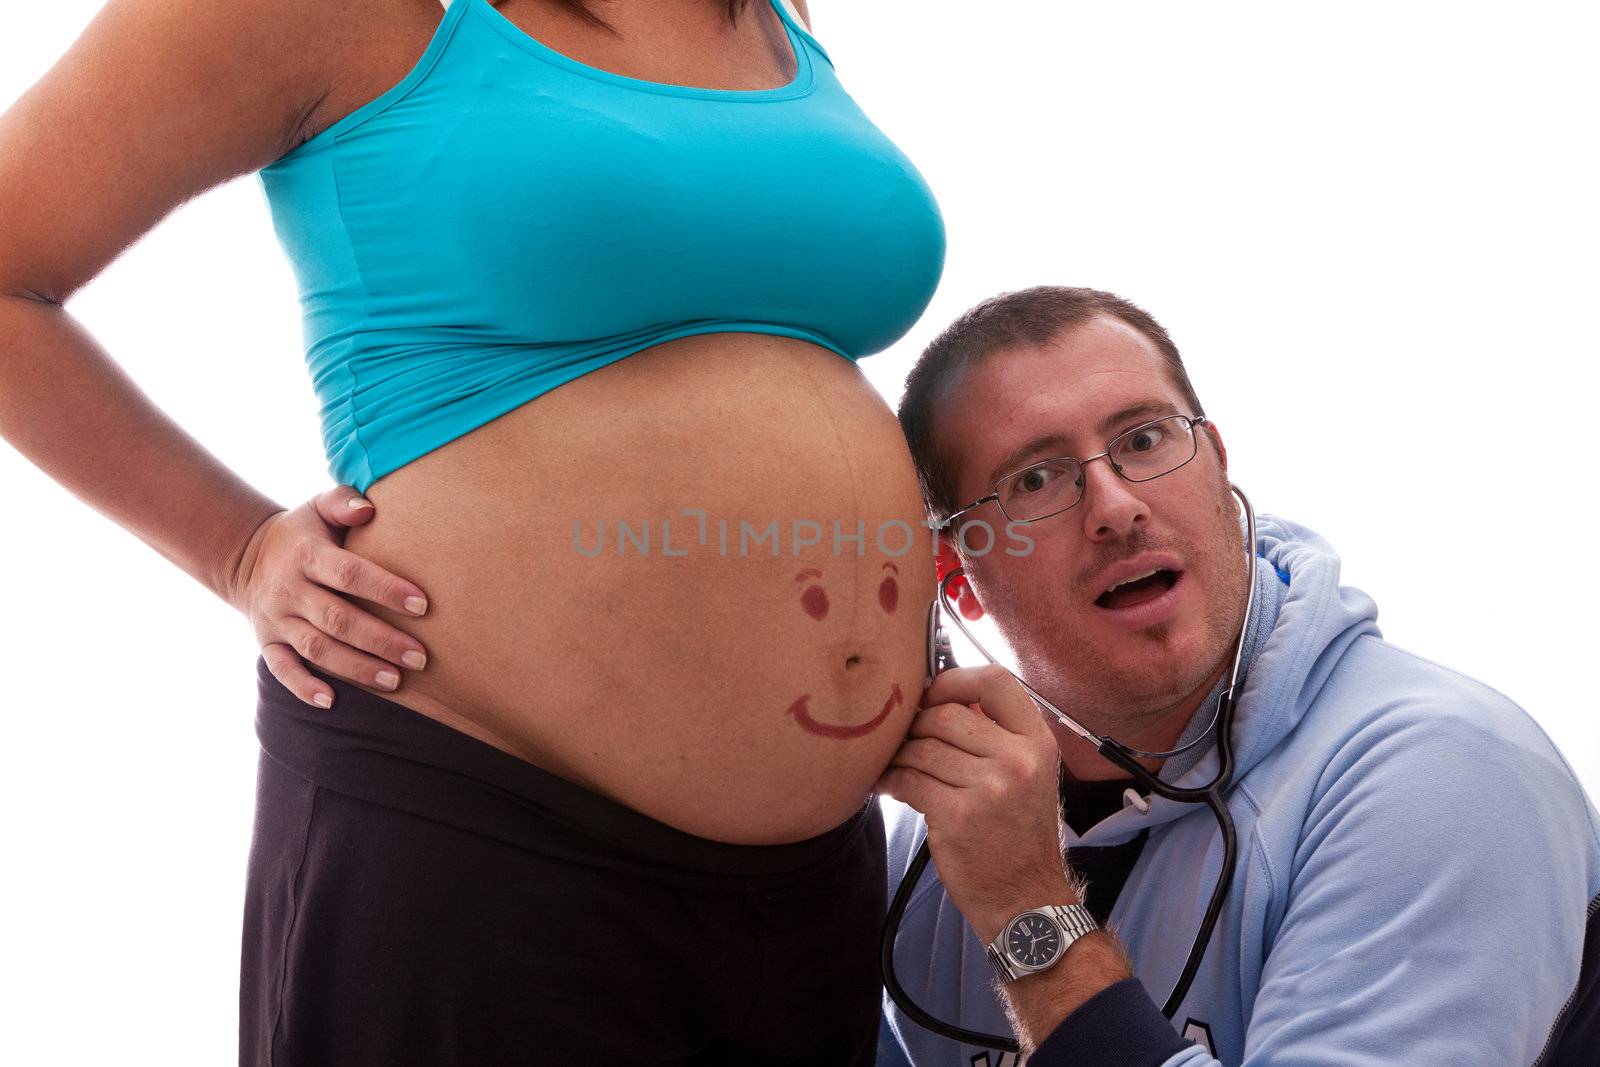 pregnant woman by lsantilli